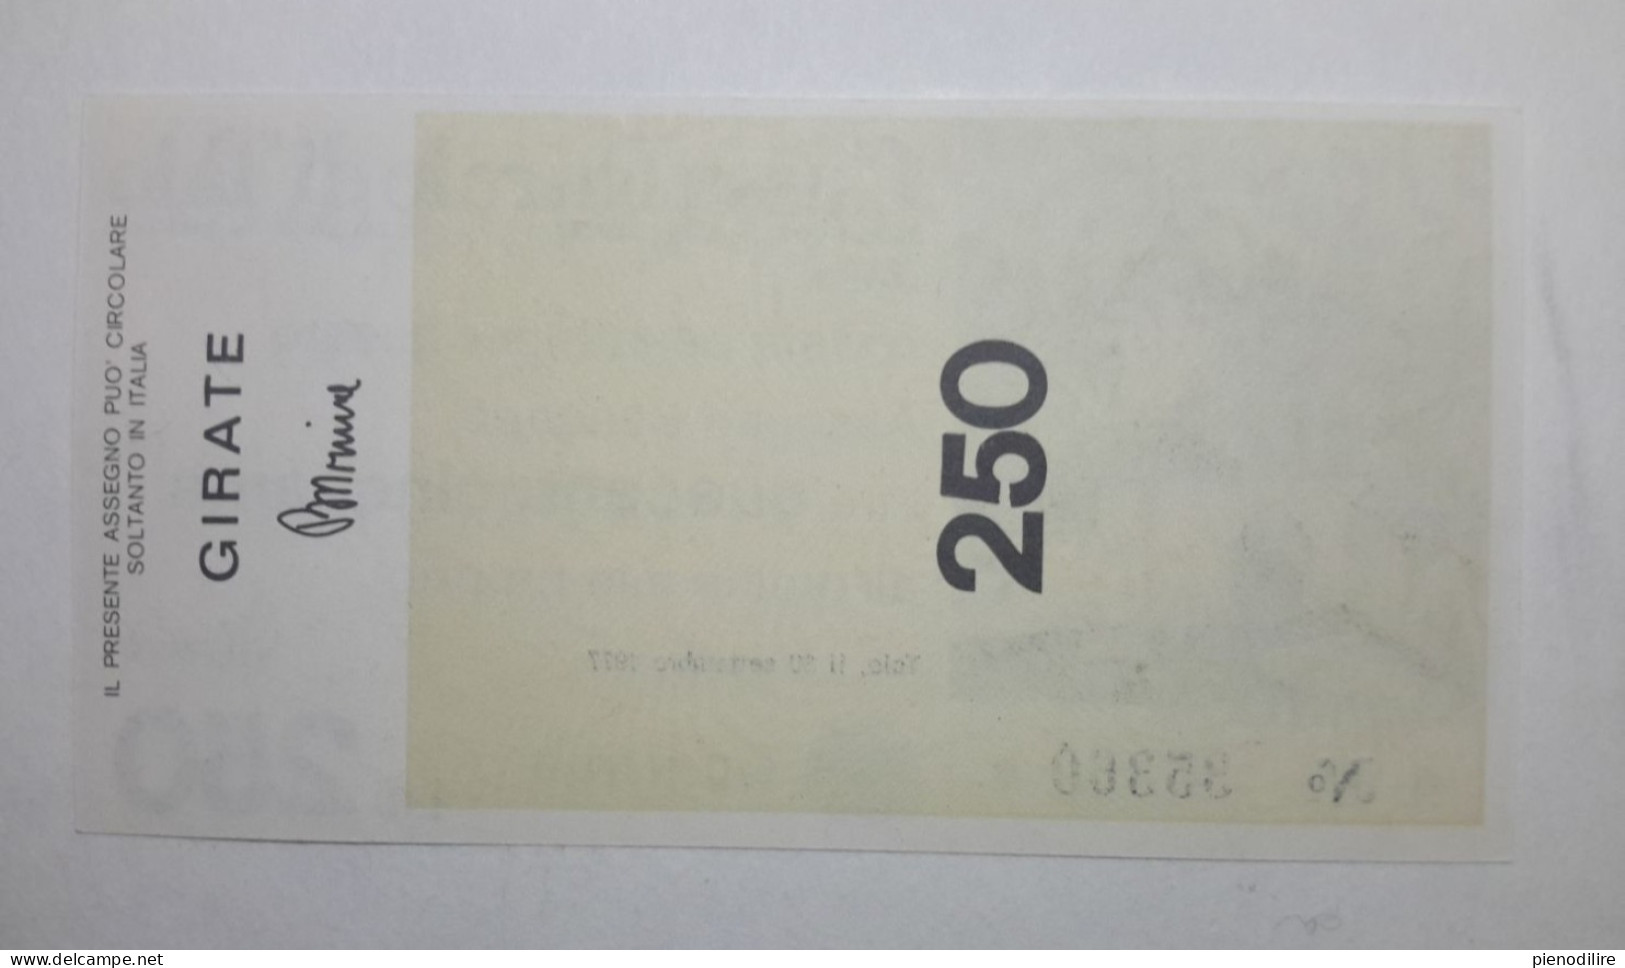 CASSA RURALE DI TAIO 250 LIRE 30.09.1977 MIO PROPRIO (A.32) - [10] Checks And Mini-checks